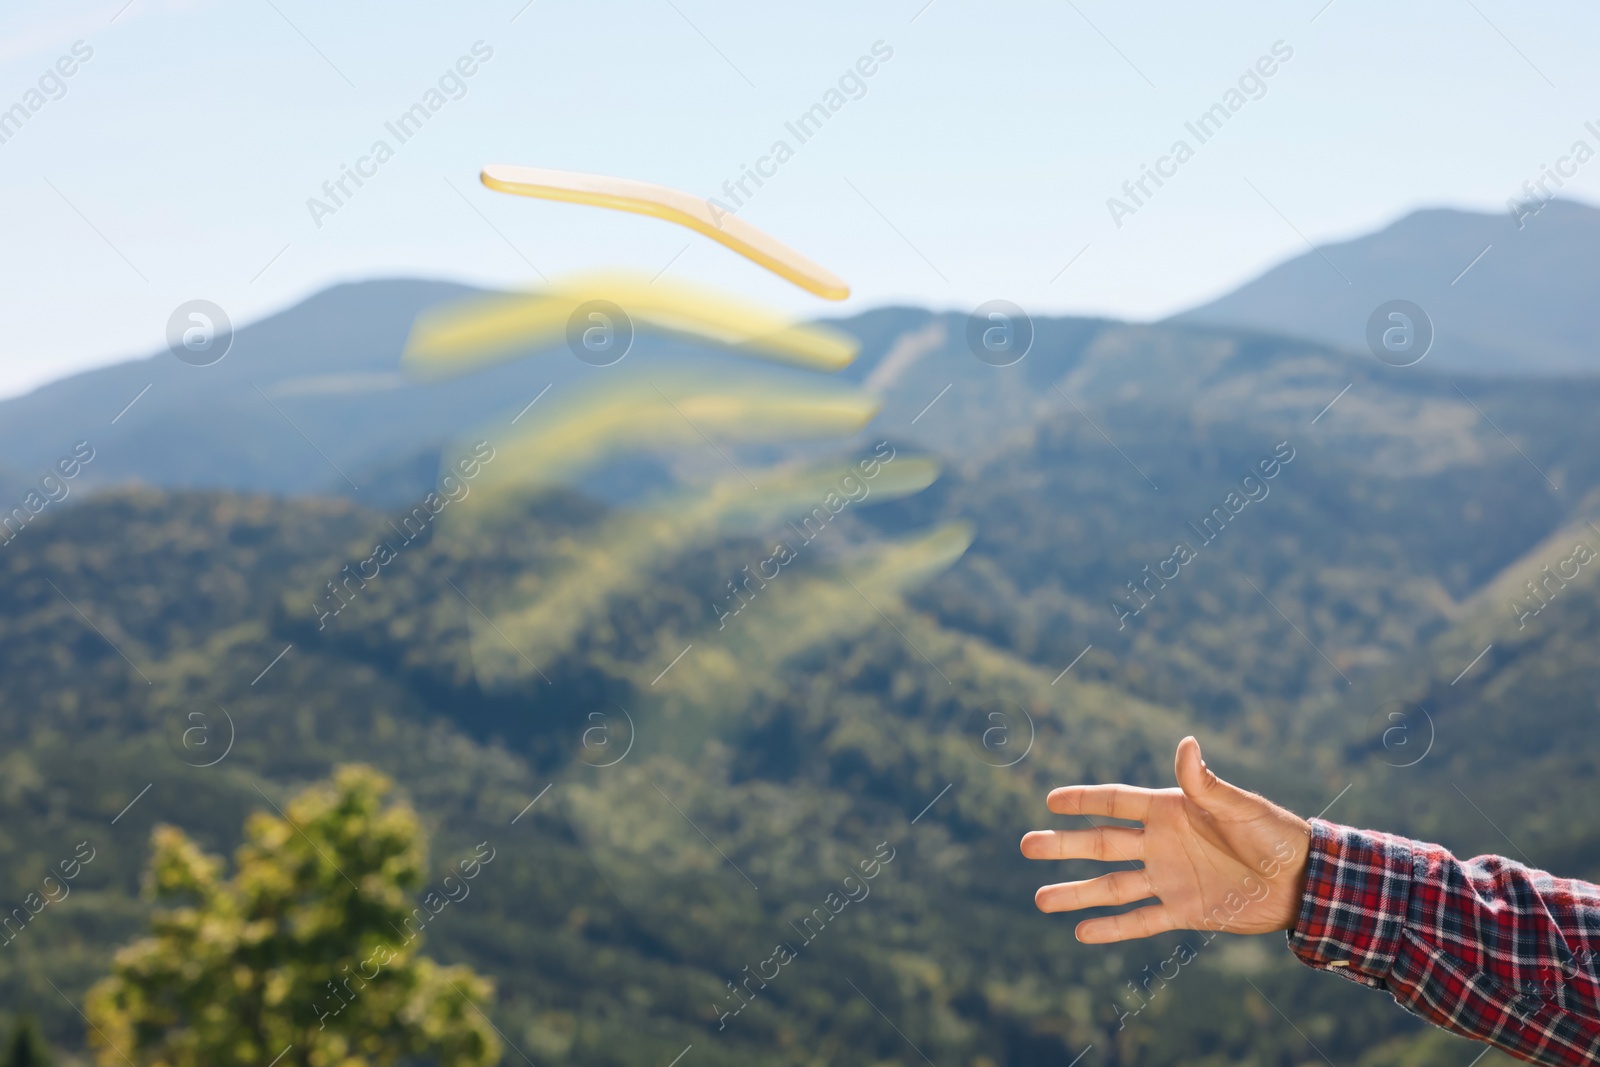 Image of Man throwing boomerang in mountains, closeup view